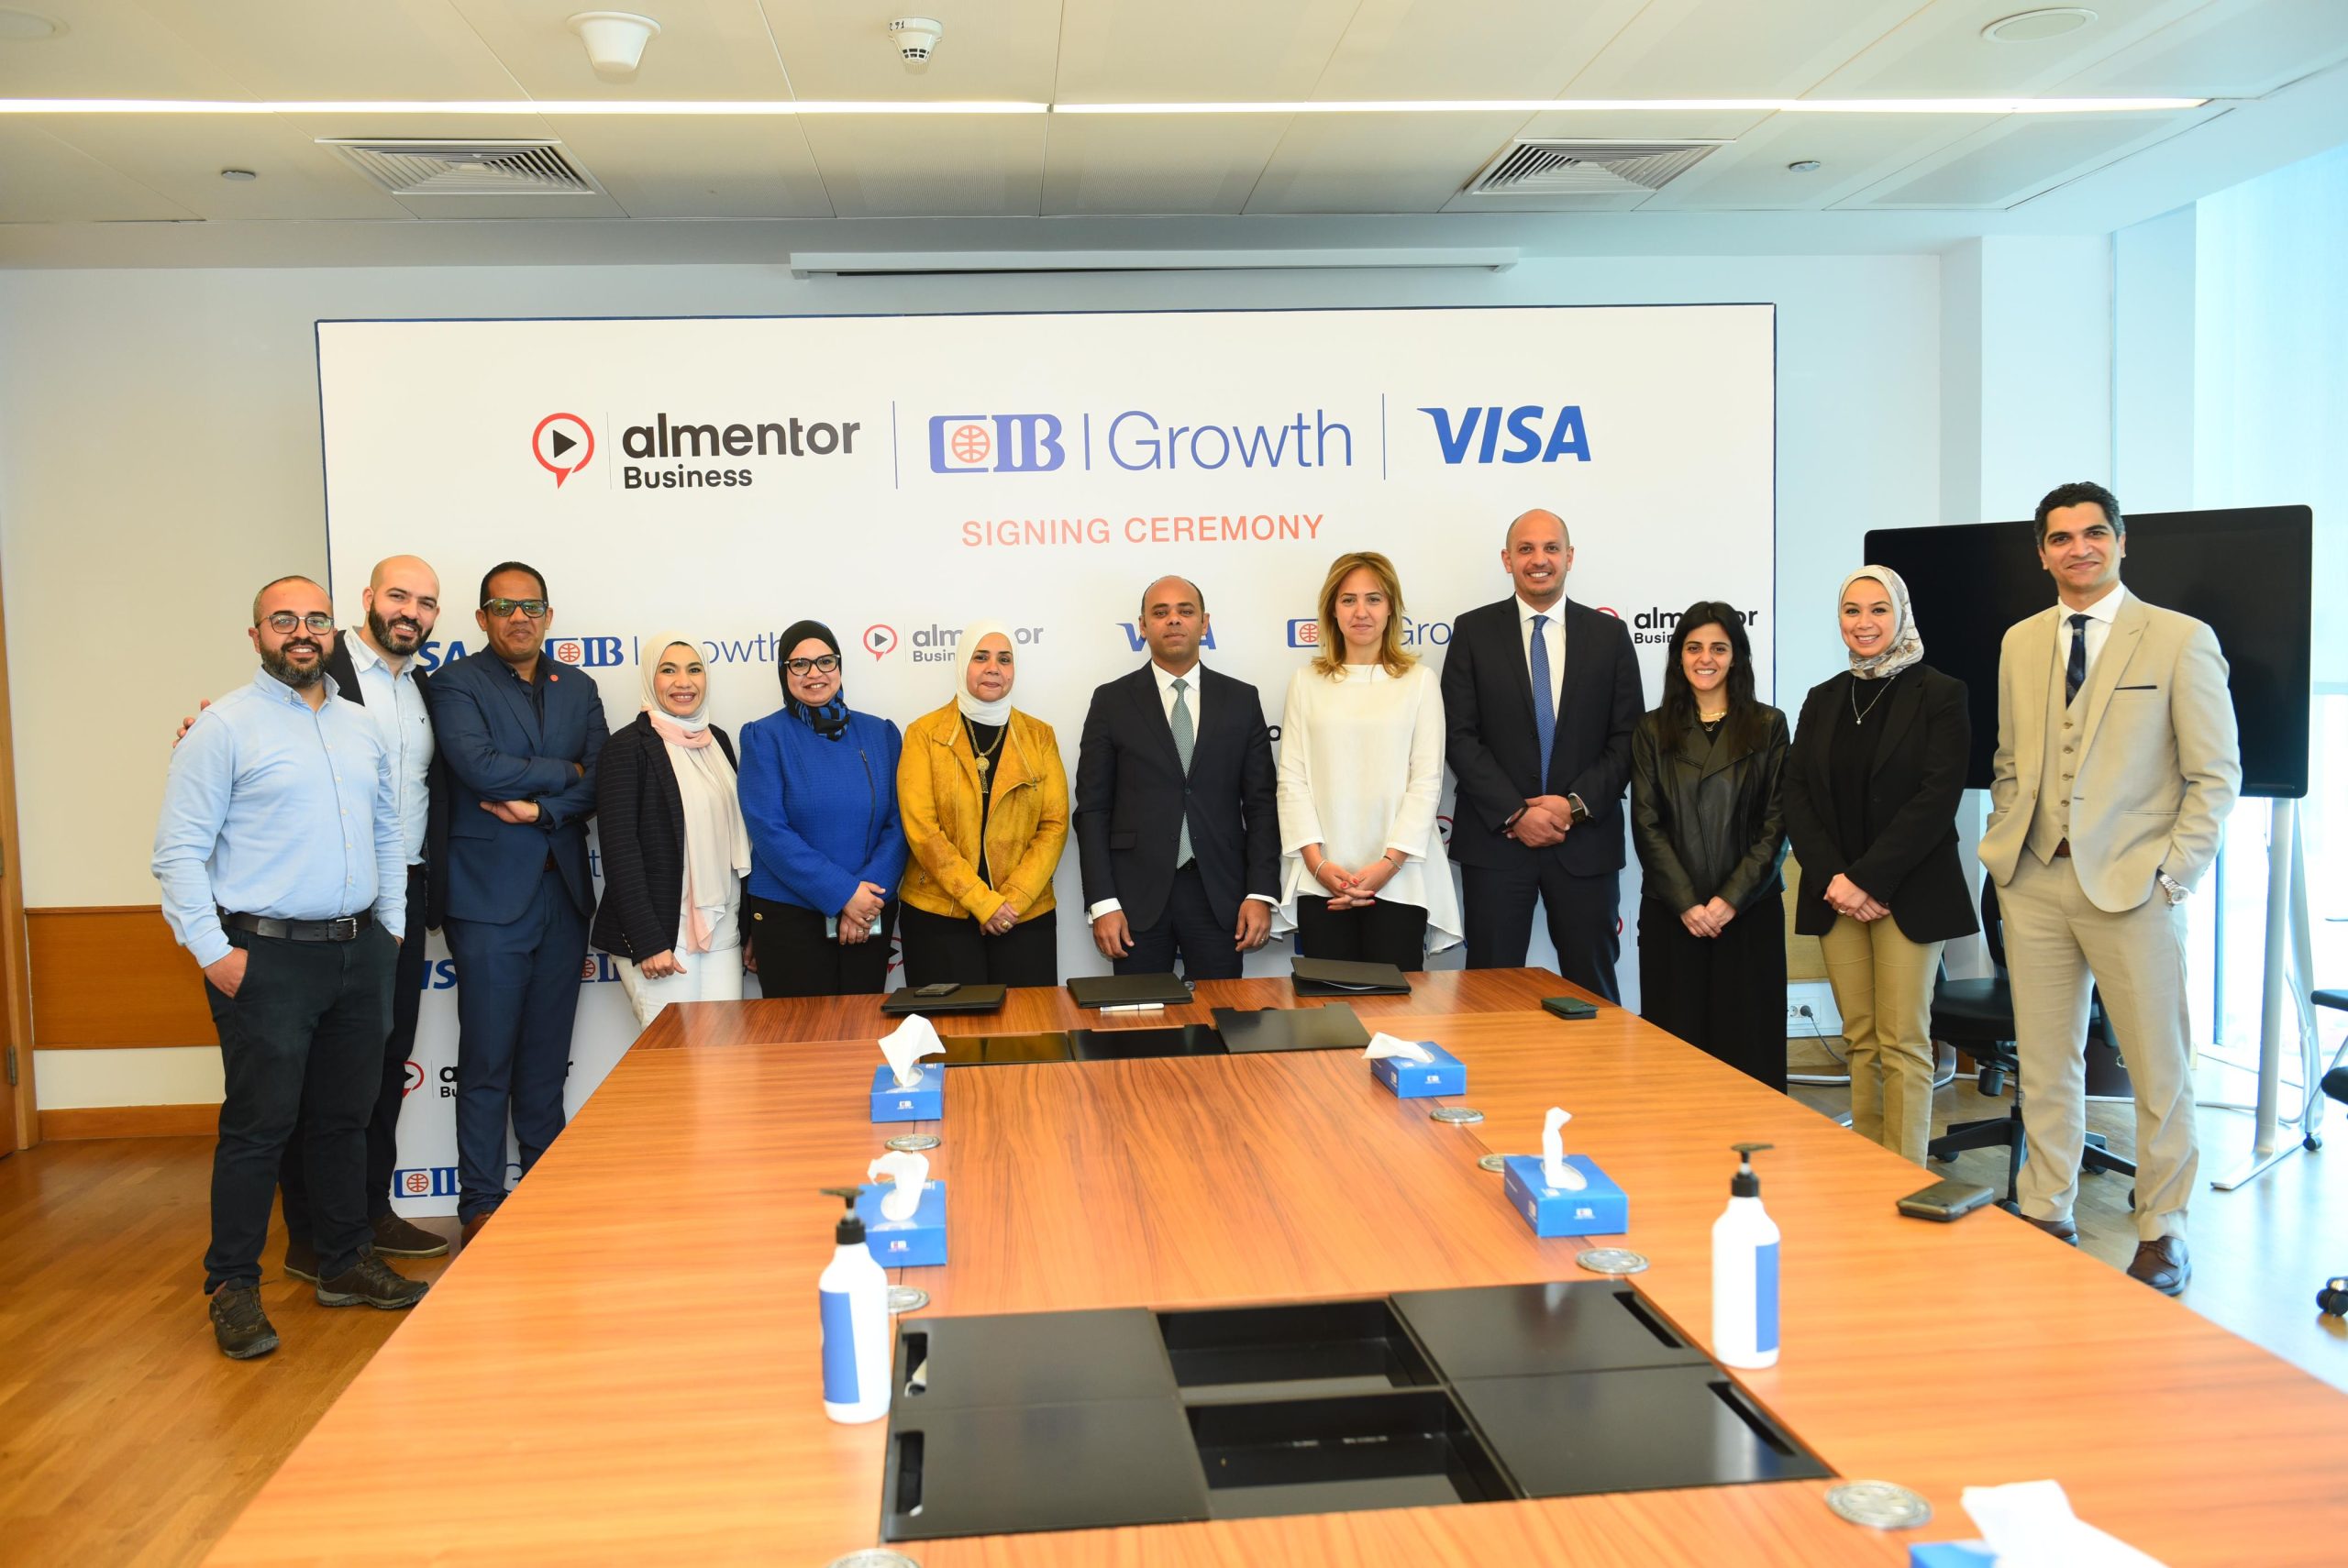 التجاري scaled " التجاري الدولي-مصر (CIB) "  يطلق منصة  Growing Together Academy لعملاء الشركات الصغيرة و المتوسطة بالتعاون مع VISA و almentor Business